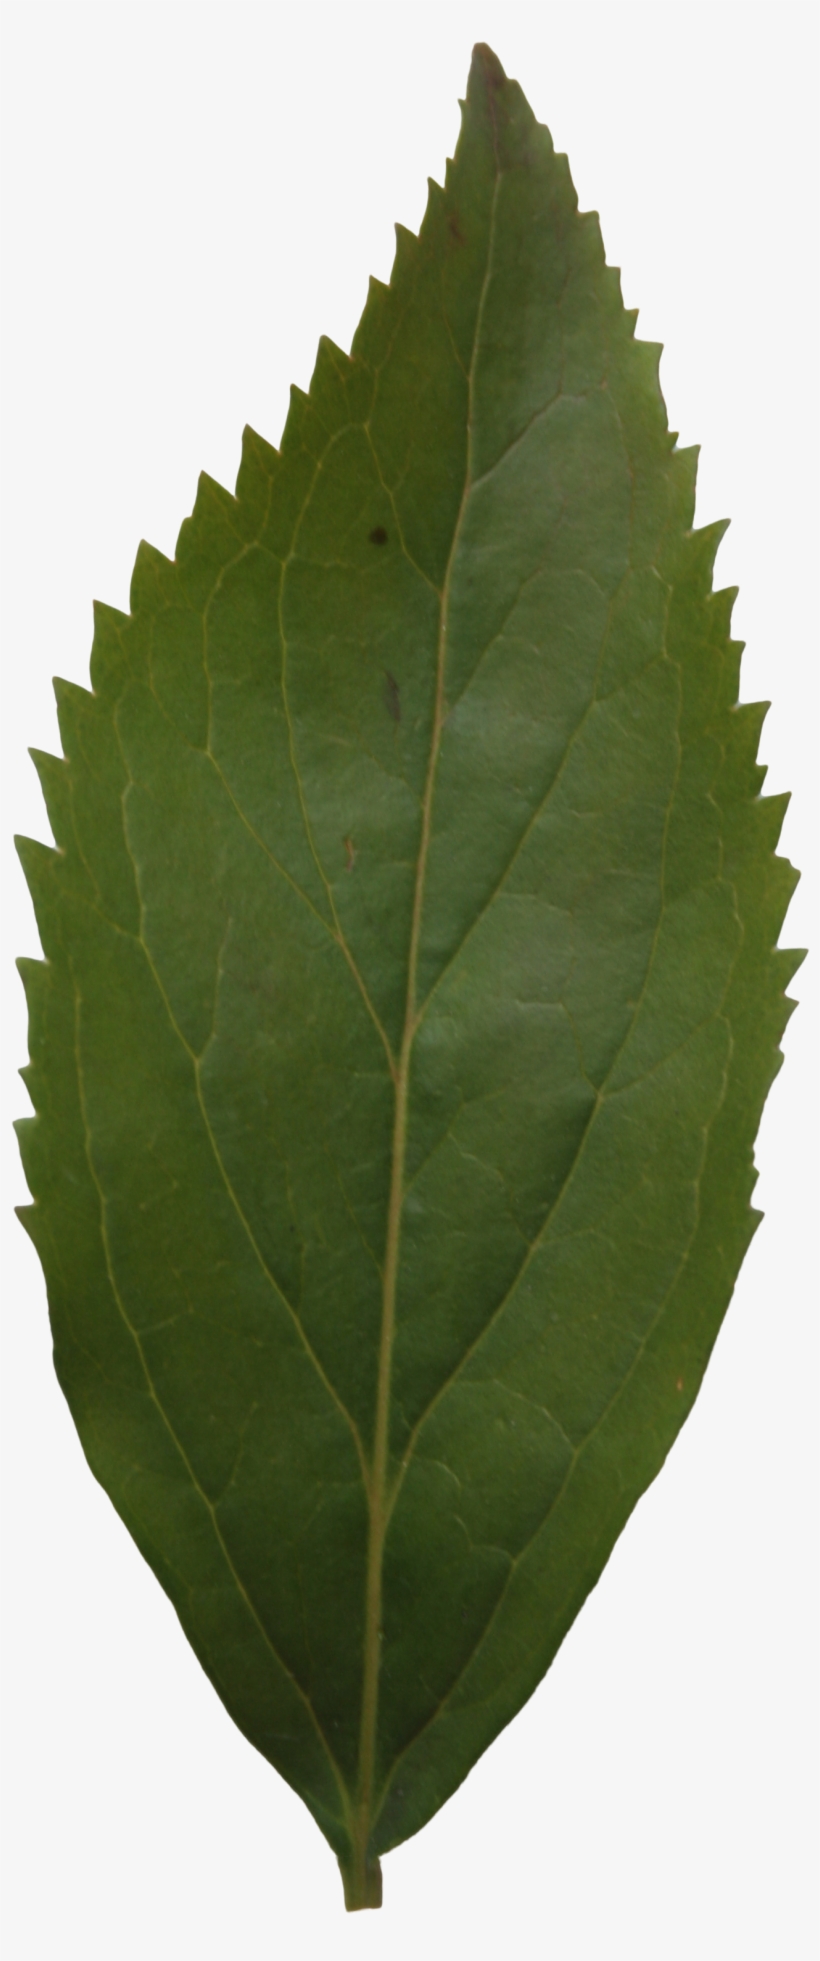 Ash Leaf Texture - Leaf, transparent png #1002128